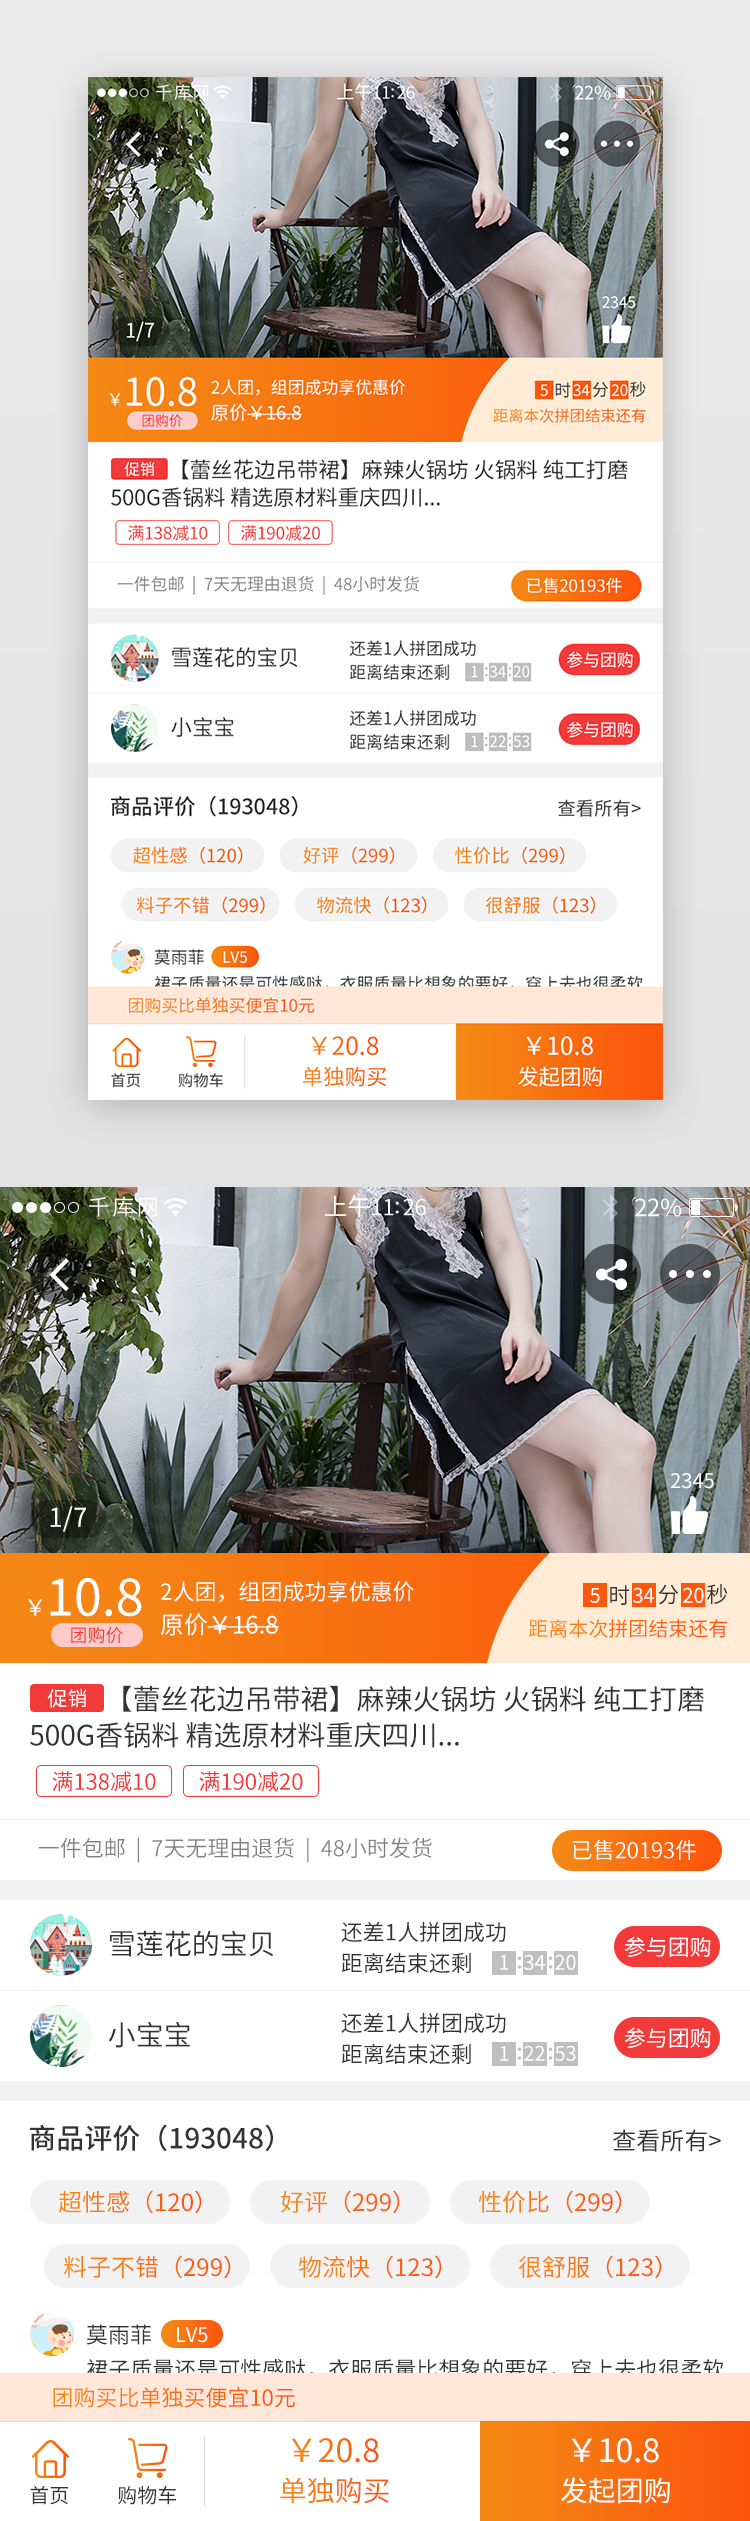 橙色系团购app立即购买界面图片